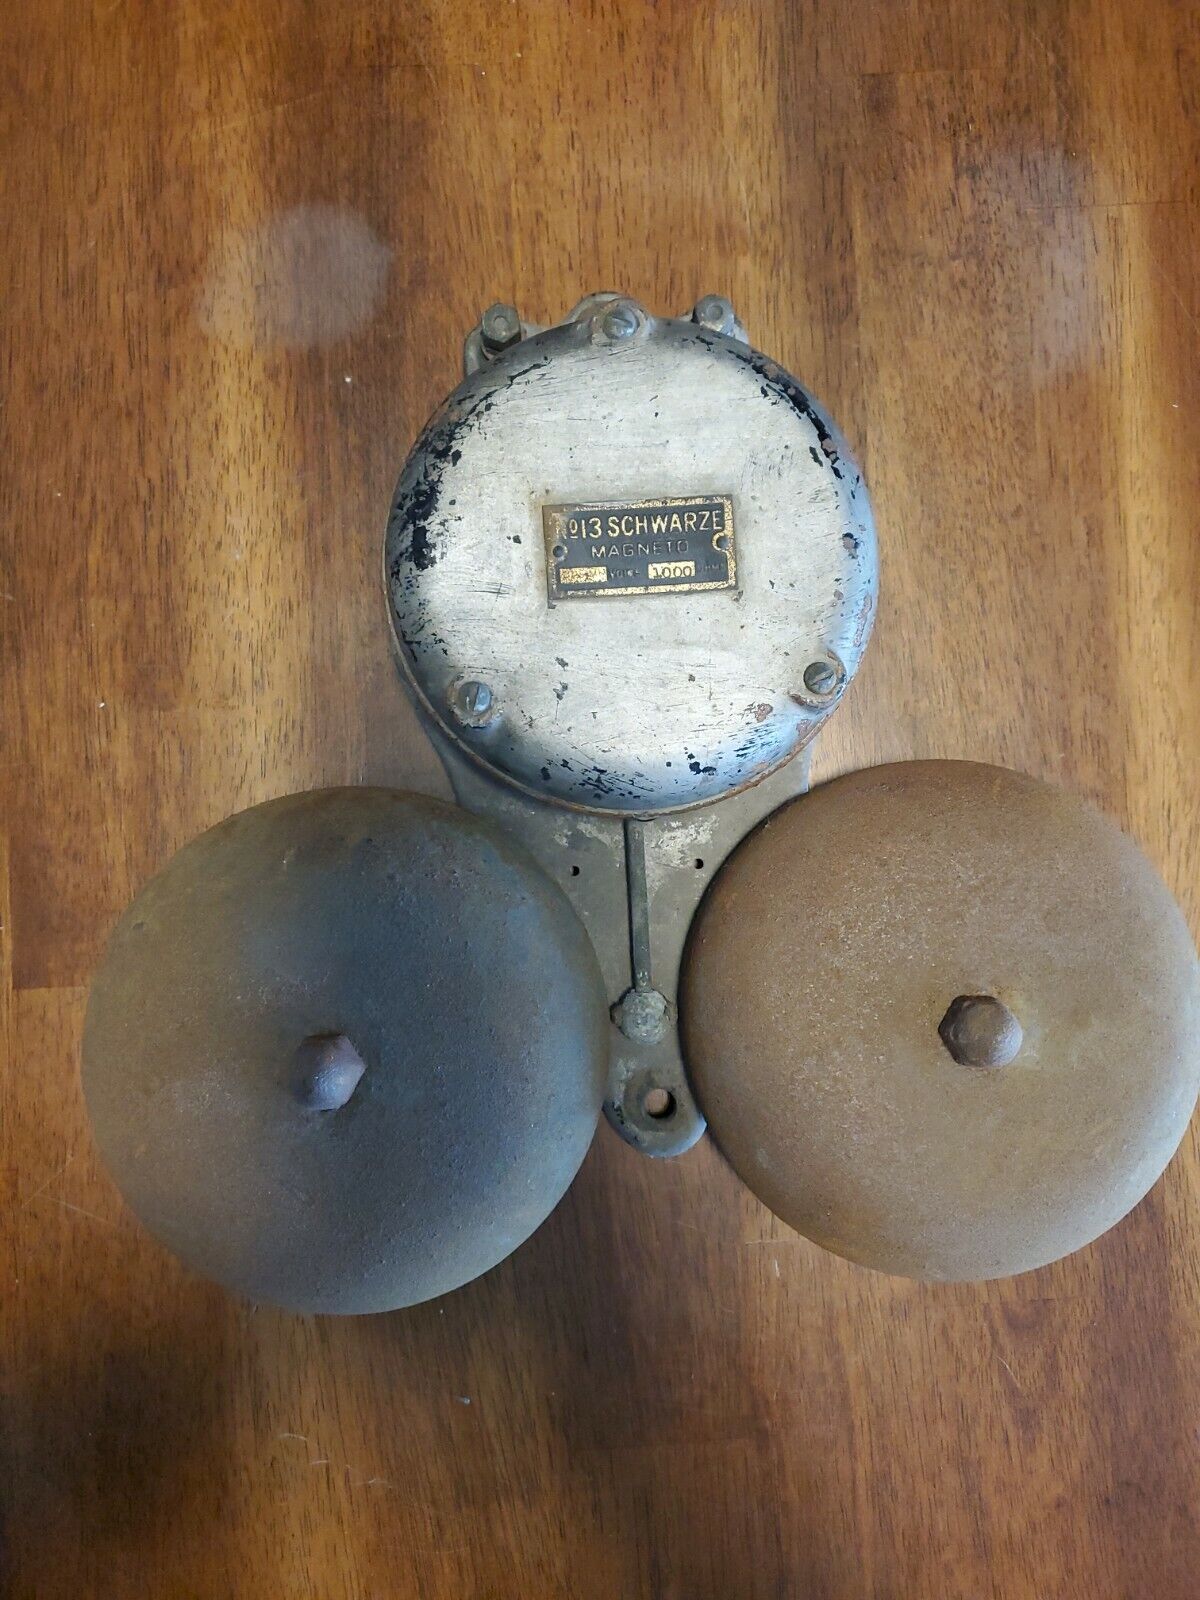 Vintage Shwarze No. 13 Manufacturing Double Bell Gong Alarm Sounder